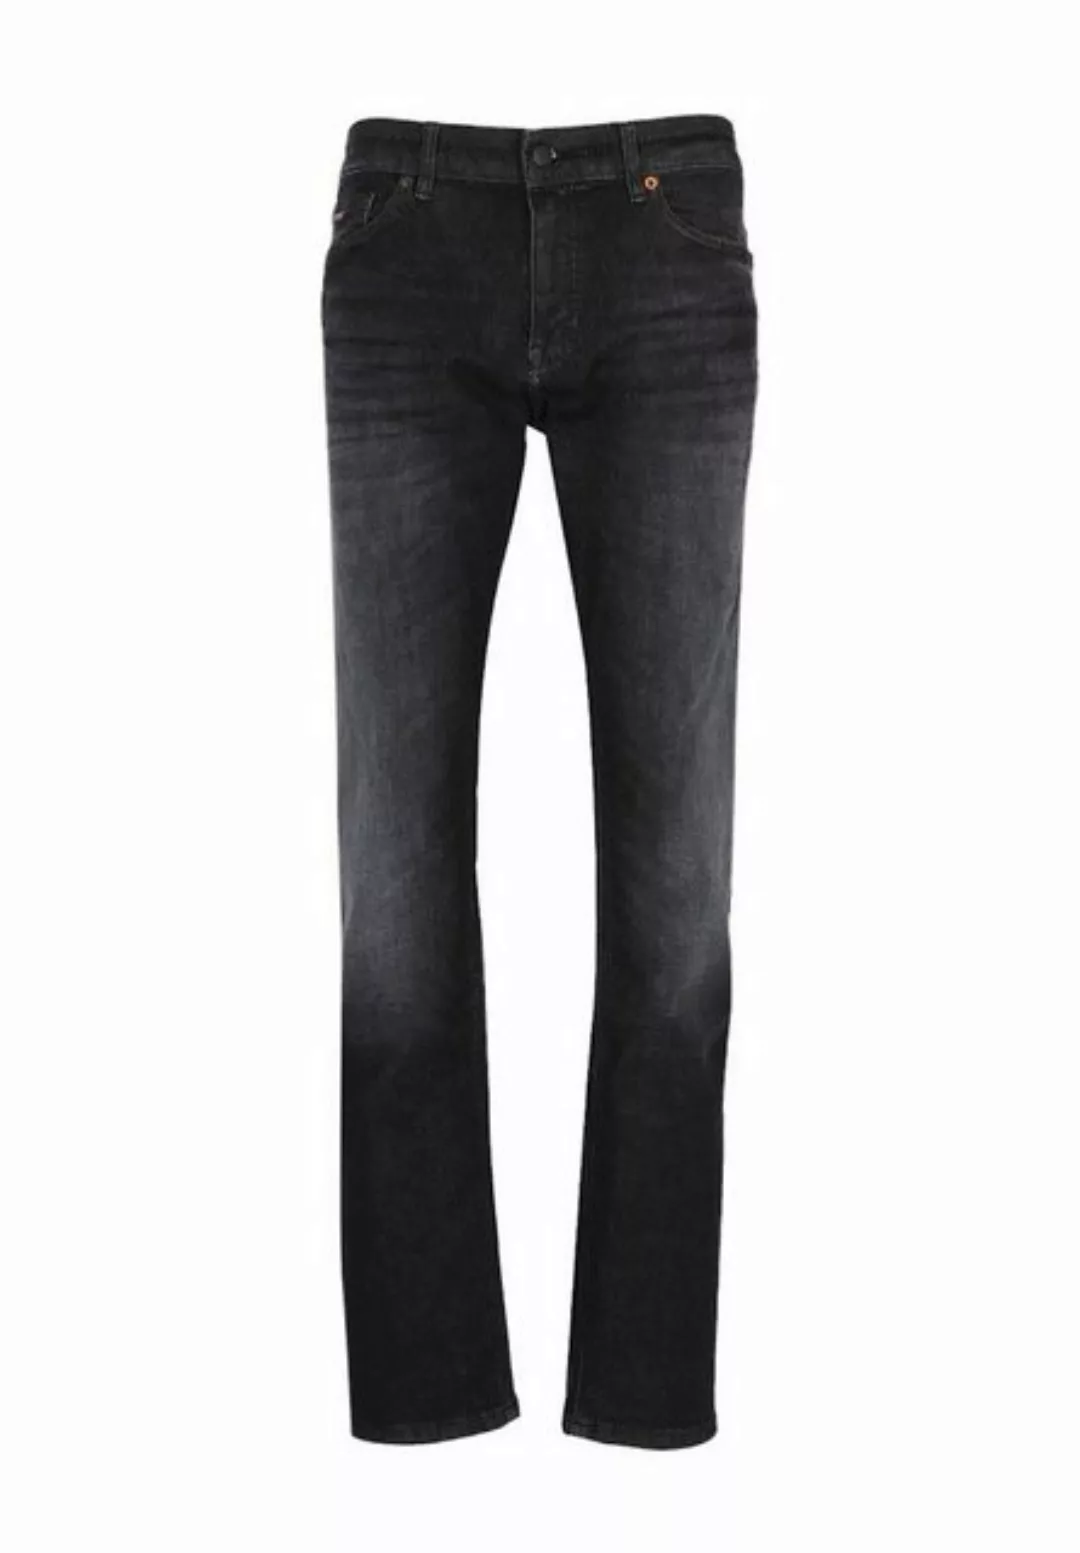 BOSS ORANGE Bequeme Jeans günstig online kaufen